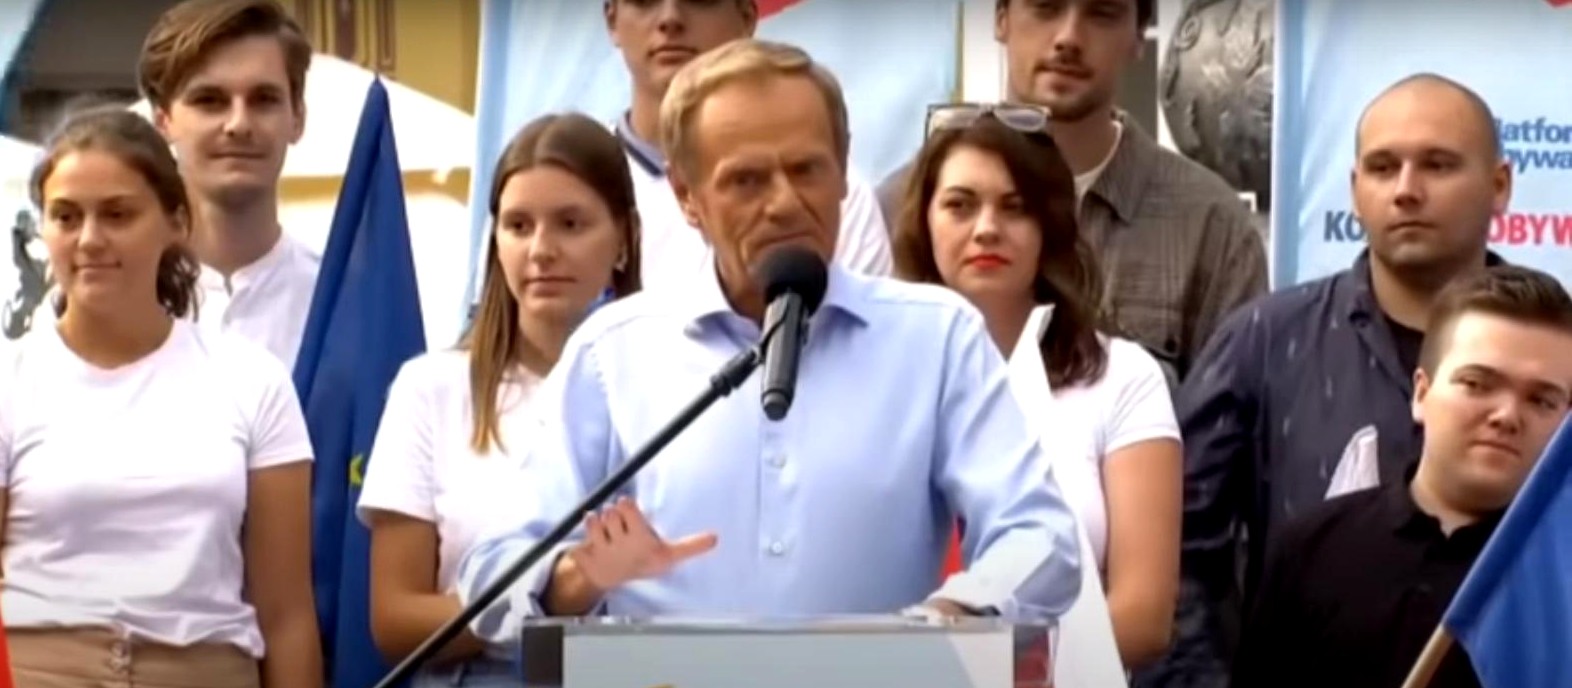 propolski.pl: Donald Tusk zwrócił się do TVP Info